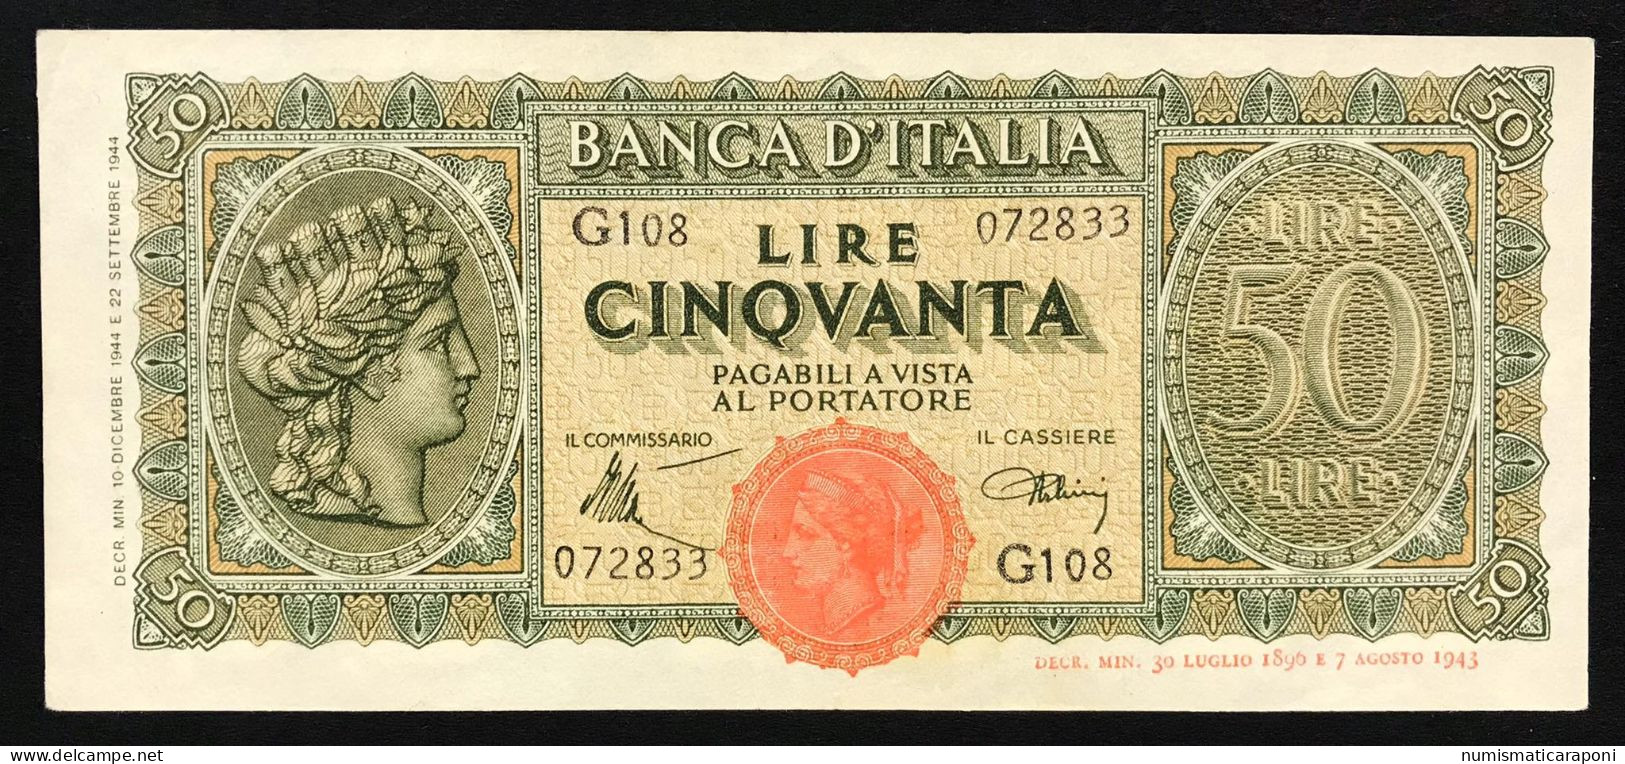 50 LIRE ITALIA TURRITA 10 12 1944  Spl OTTIMO BIGLIETTO  LOTTO 1693 - 50 Lire